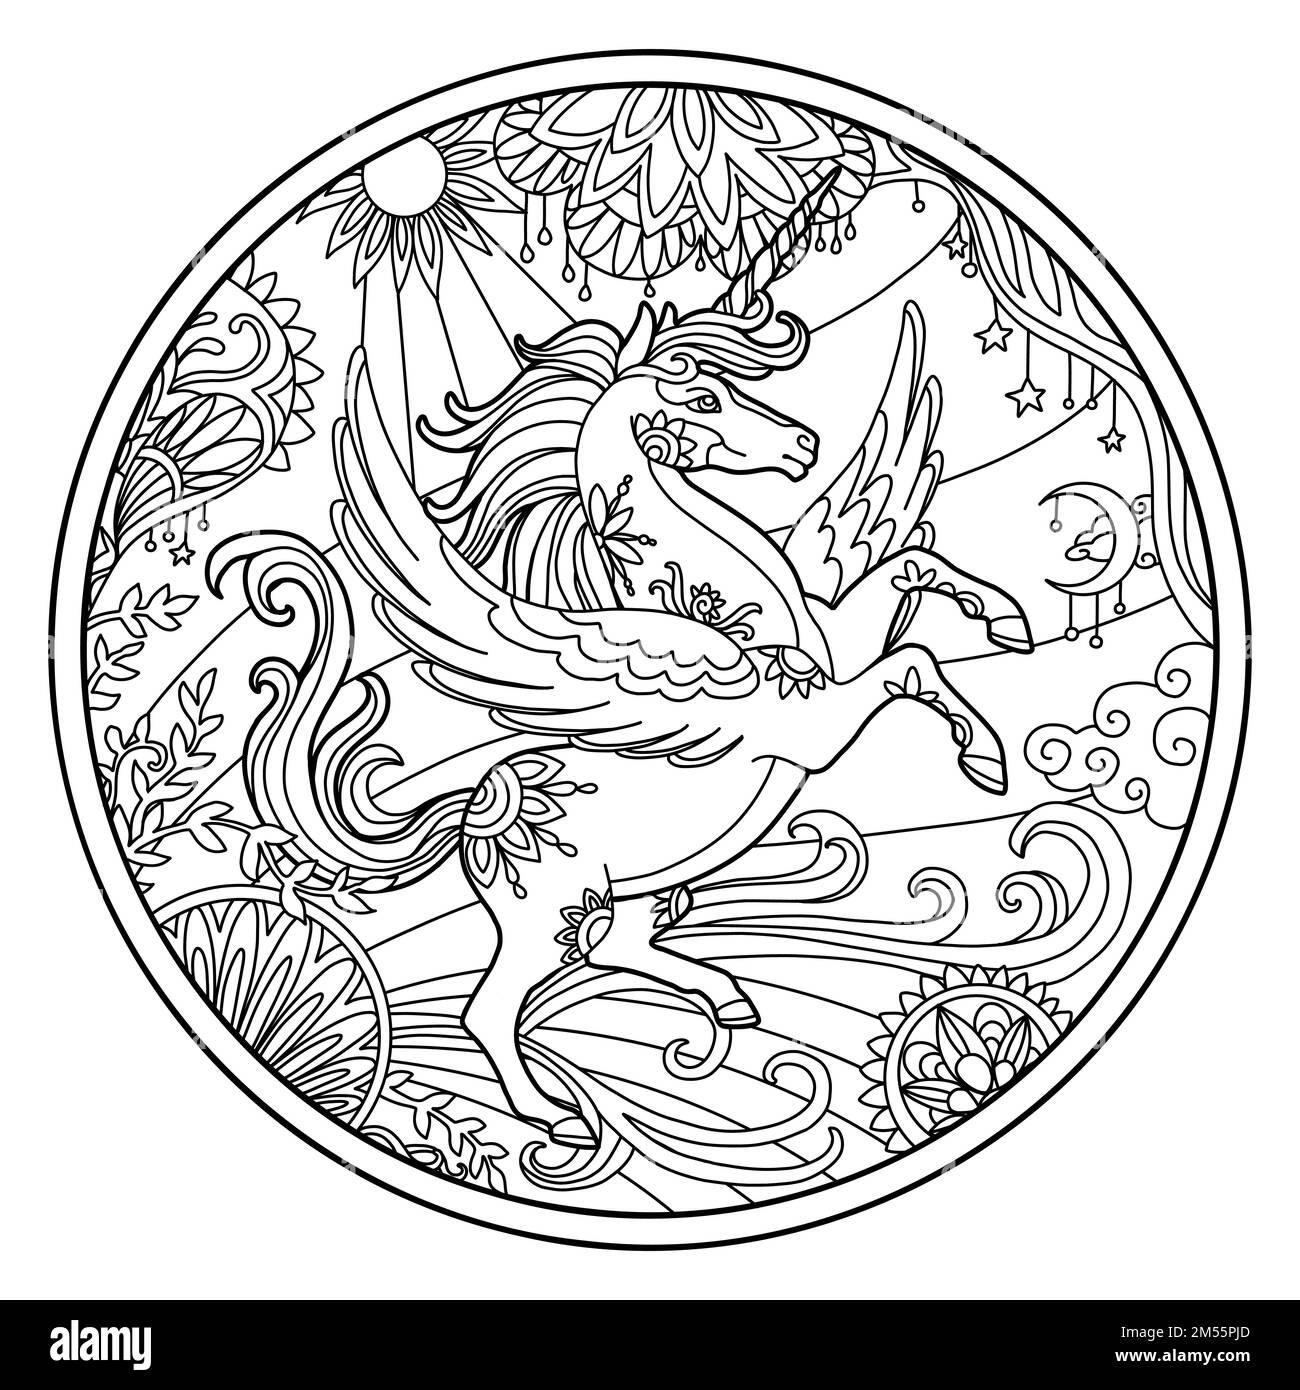 Unicorno con ali a forma rotonda con cornice floreale. Disegno a mano cavallo magico per colorare libro, camicia design, puzzle, stampa, decorazione. Illust vettoriale stilizzato Illustrazione Vettoriale